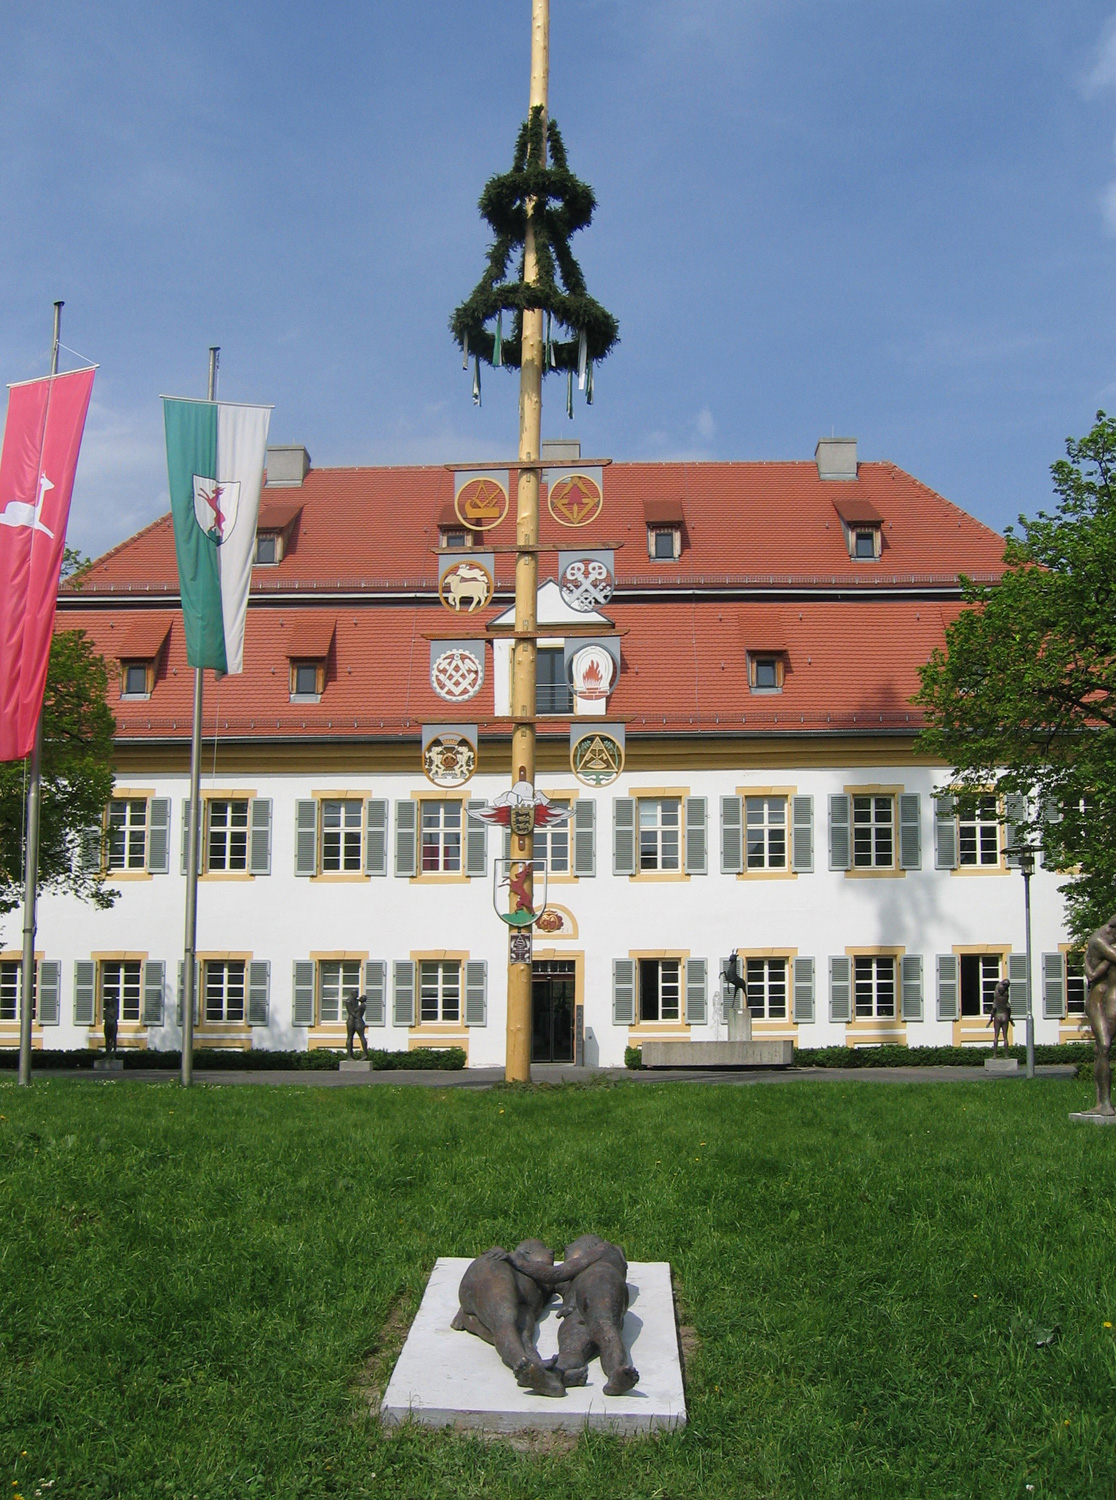 Neues Schloss Rechberghausen im Landkreis Göppingen